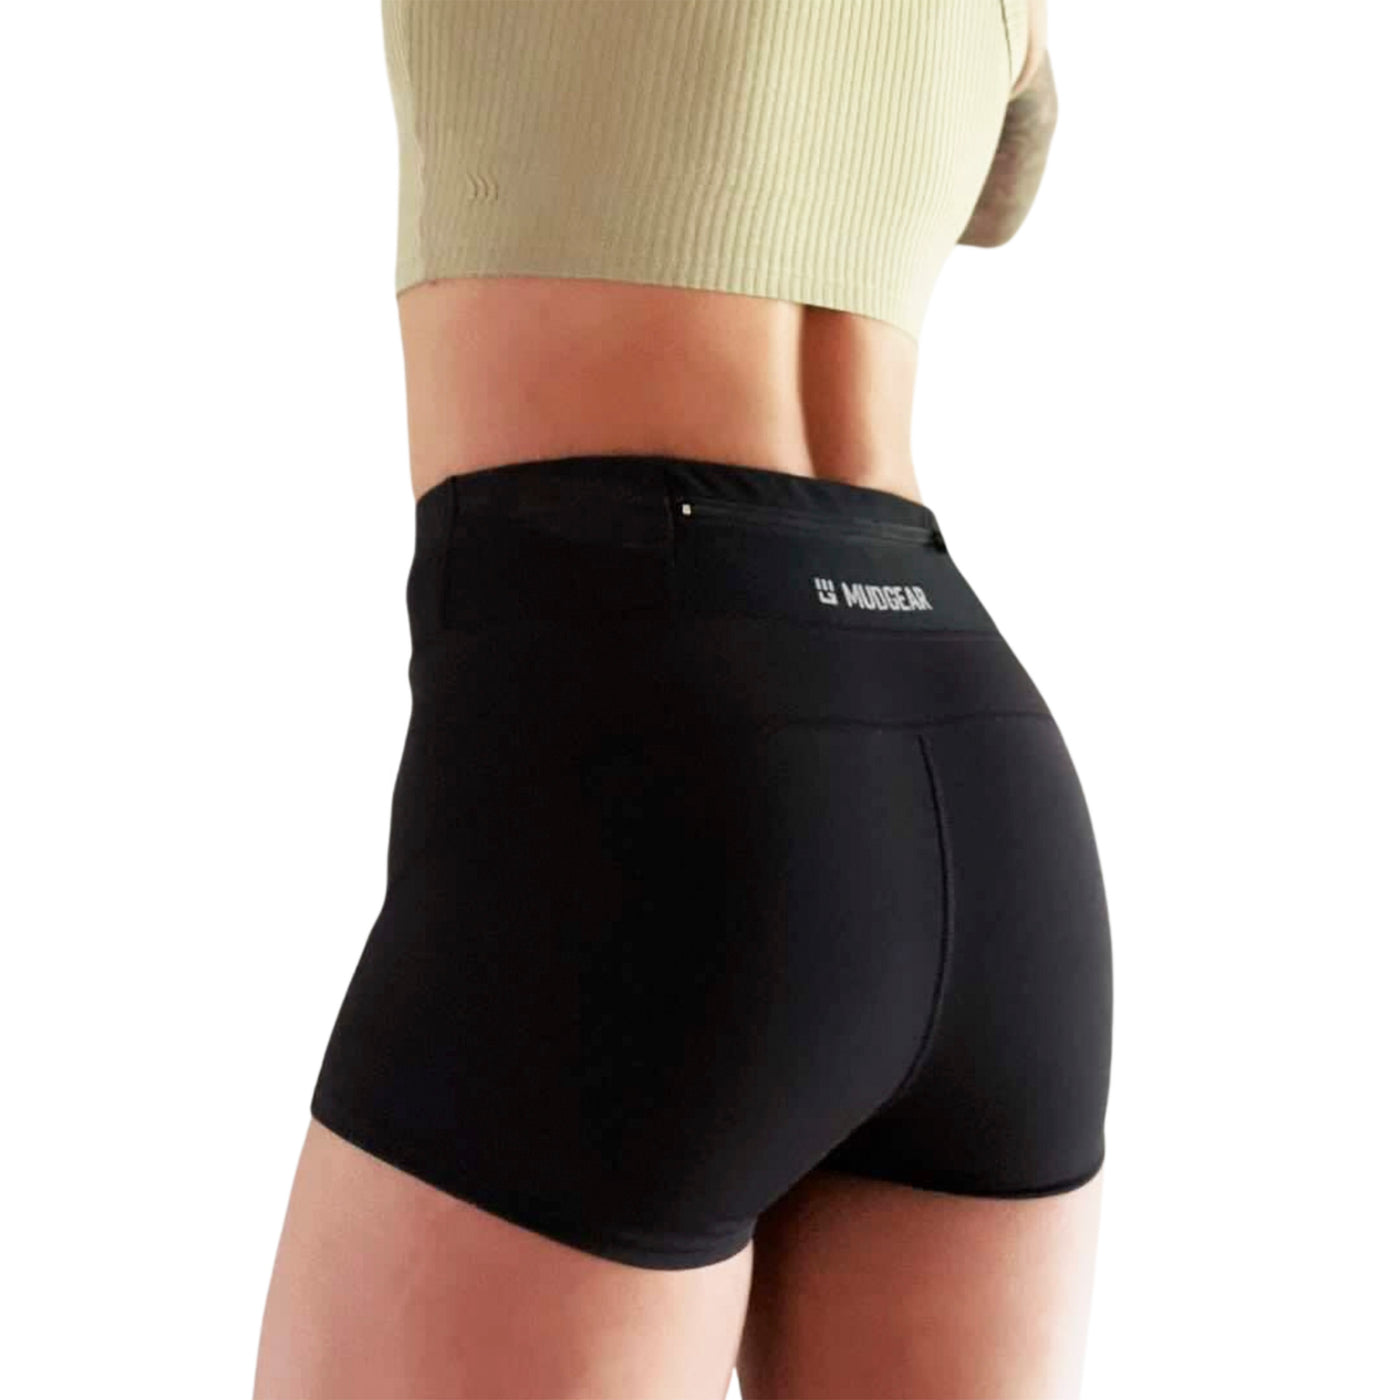 Best - Women’s Flex fit compression shorts 2-inch inseam